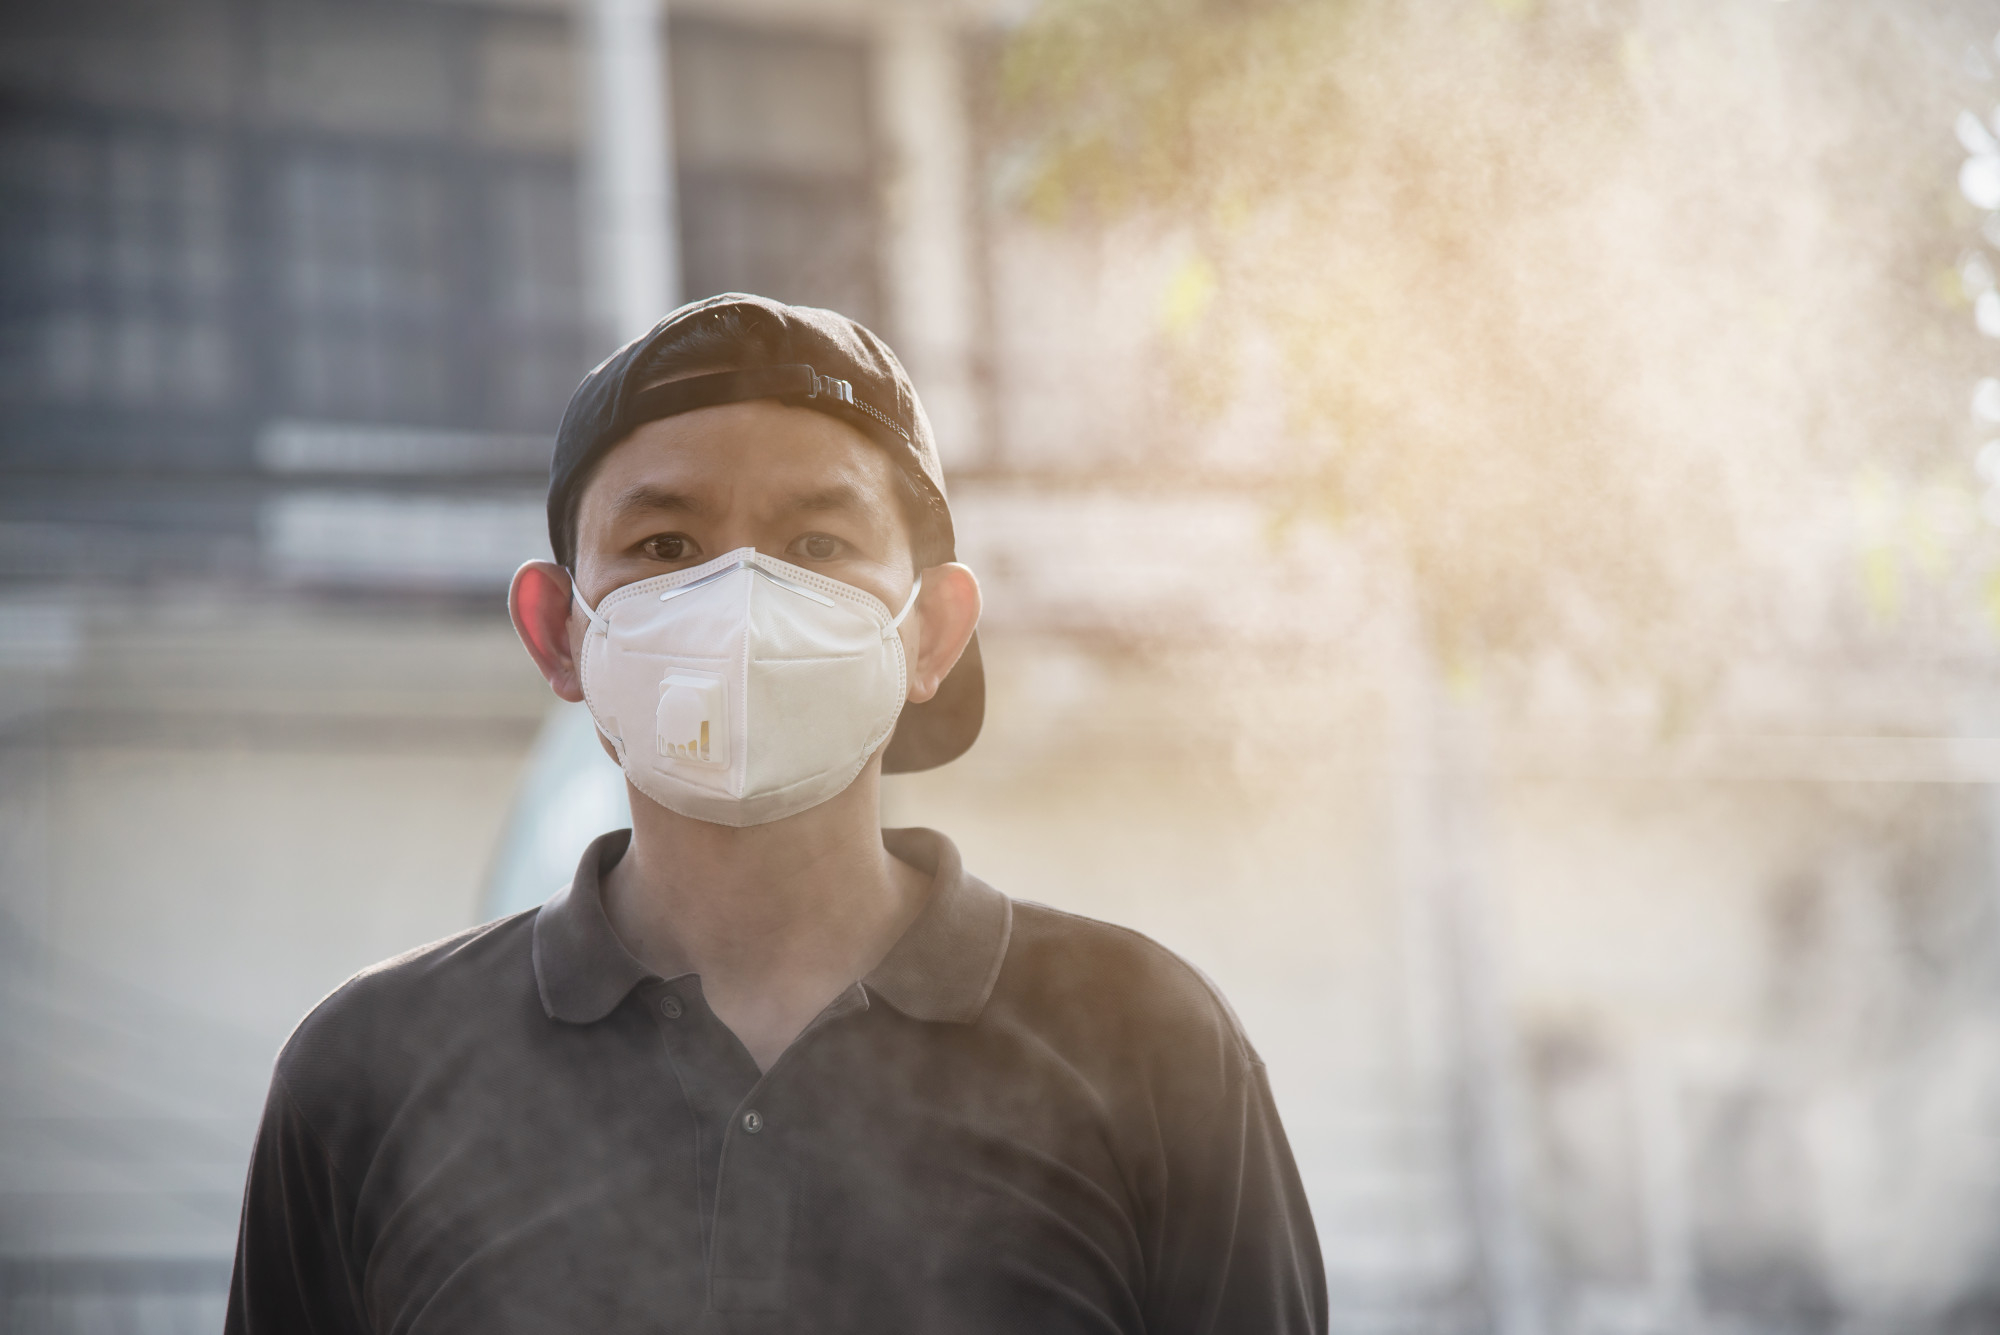 ฝุ่นพิษ…ภาพสะท้อนความเหลื่อมล้ำทางด้านสุขภาพและสิ่งแวดล้อม